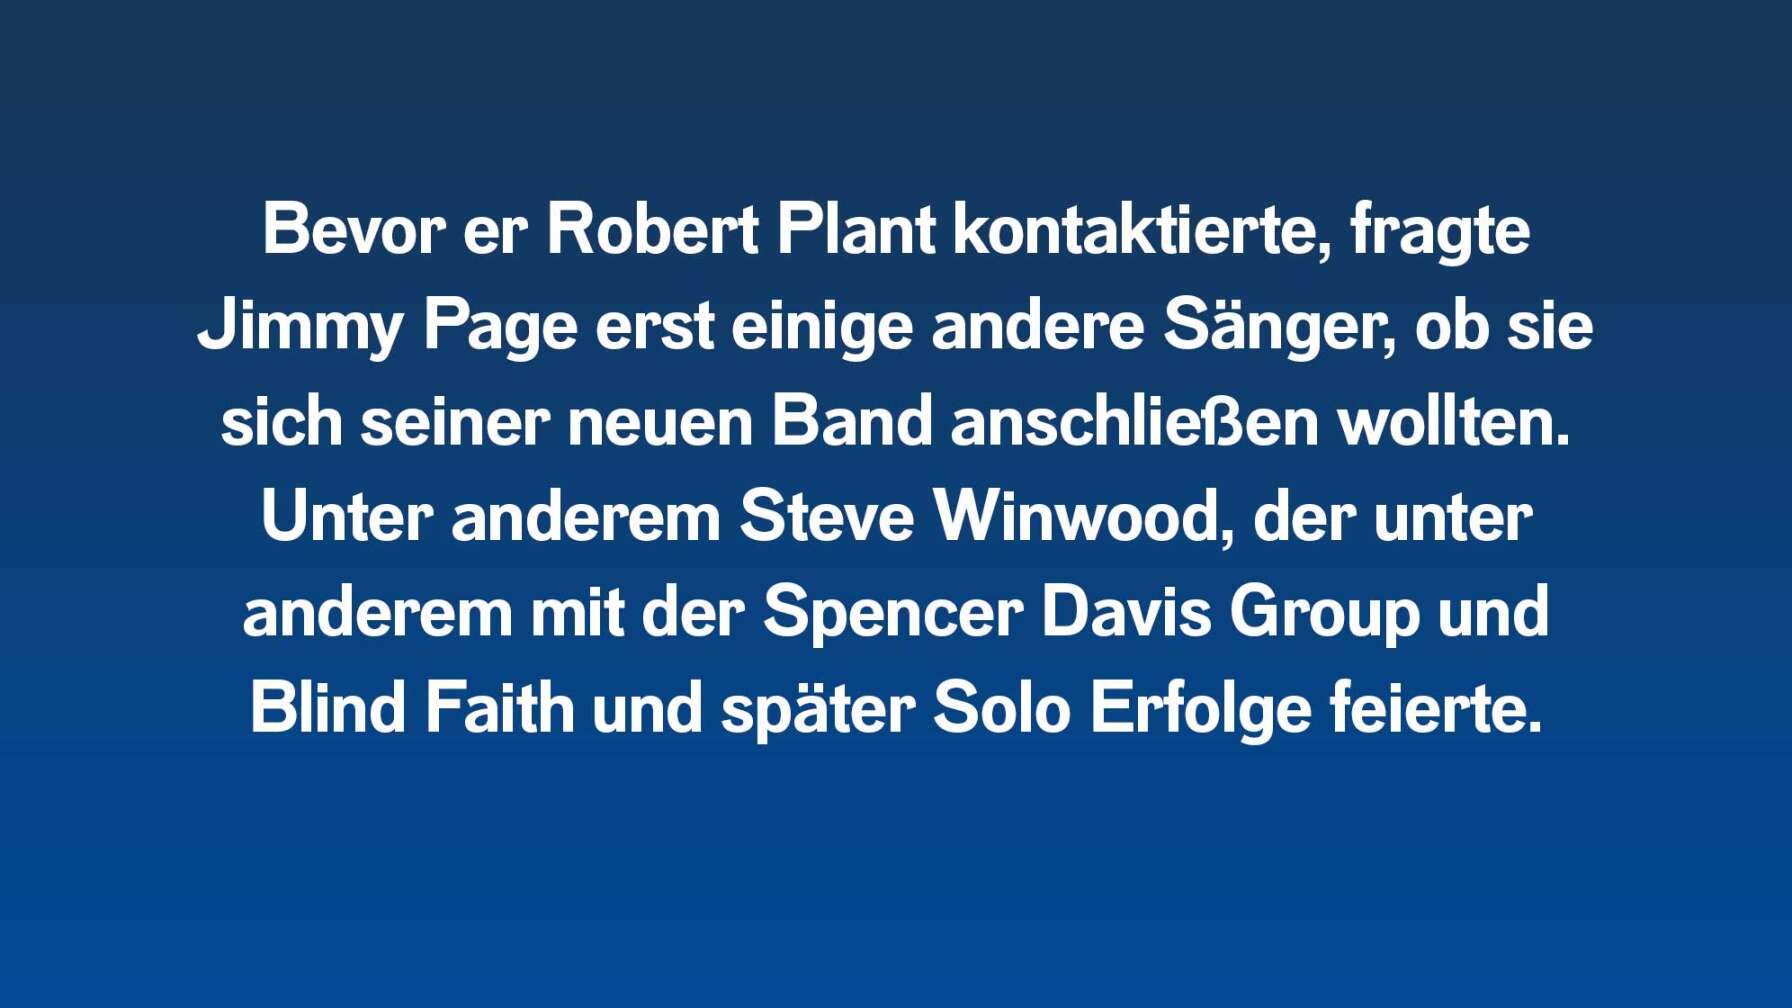 Bevor er Robert Plant kontaktierte, fragte Jimmy Page erst einige andere Sänger, ob sie sich seiner neuen Band anschließen wollten. Unter anderem Steve Winwood, der unter anderem mit der Spencer Davis Group und Blind Faith und später Solo Erfolge feierte.